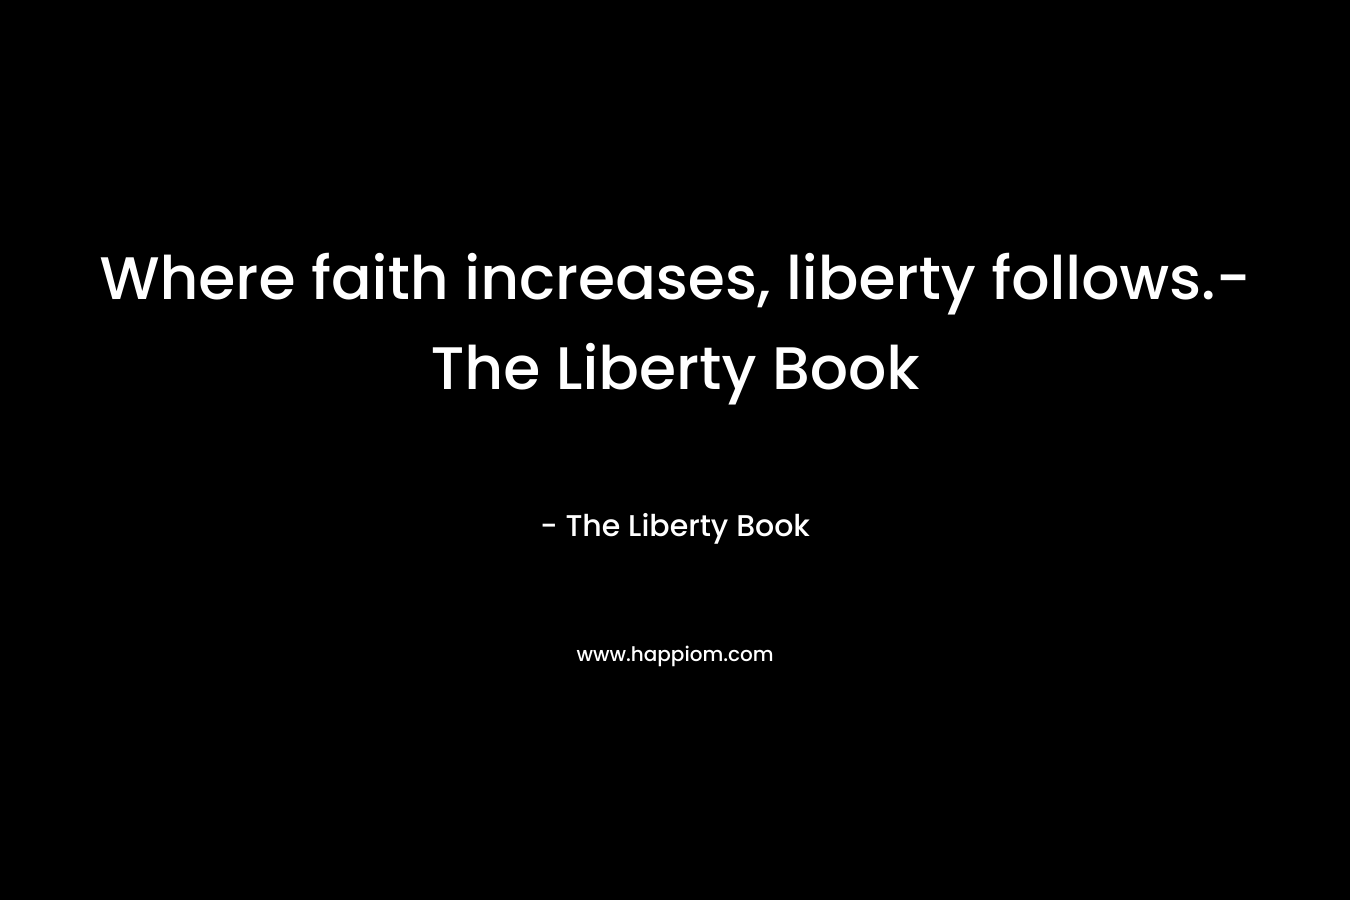 Where faith increases, liberty follows.-The Liberty Book